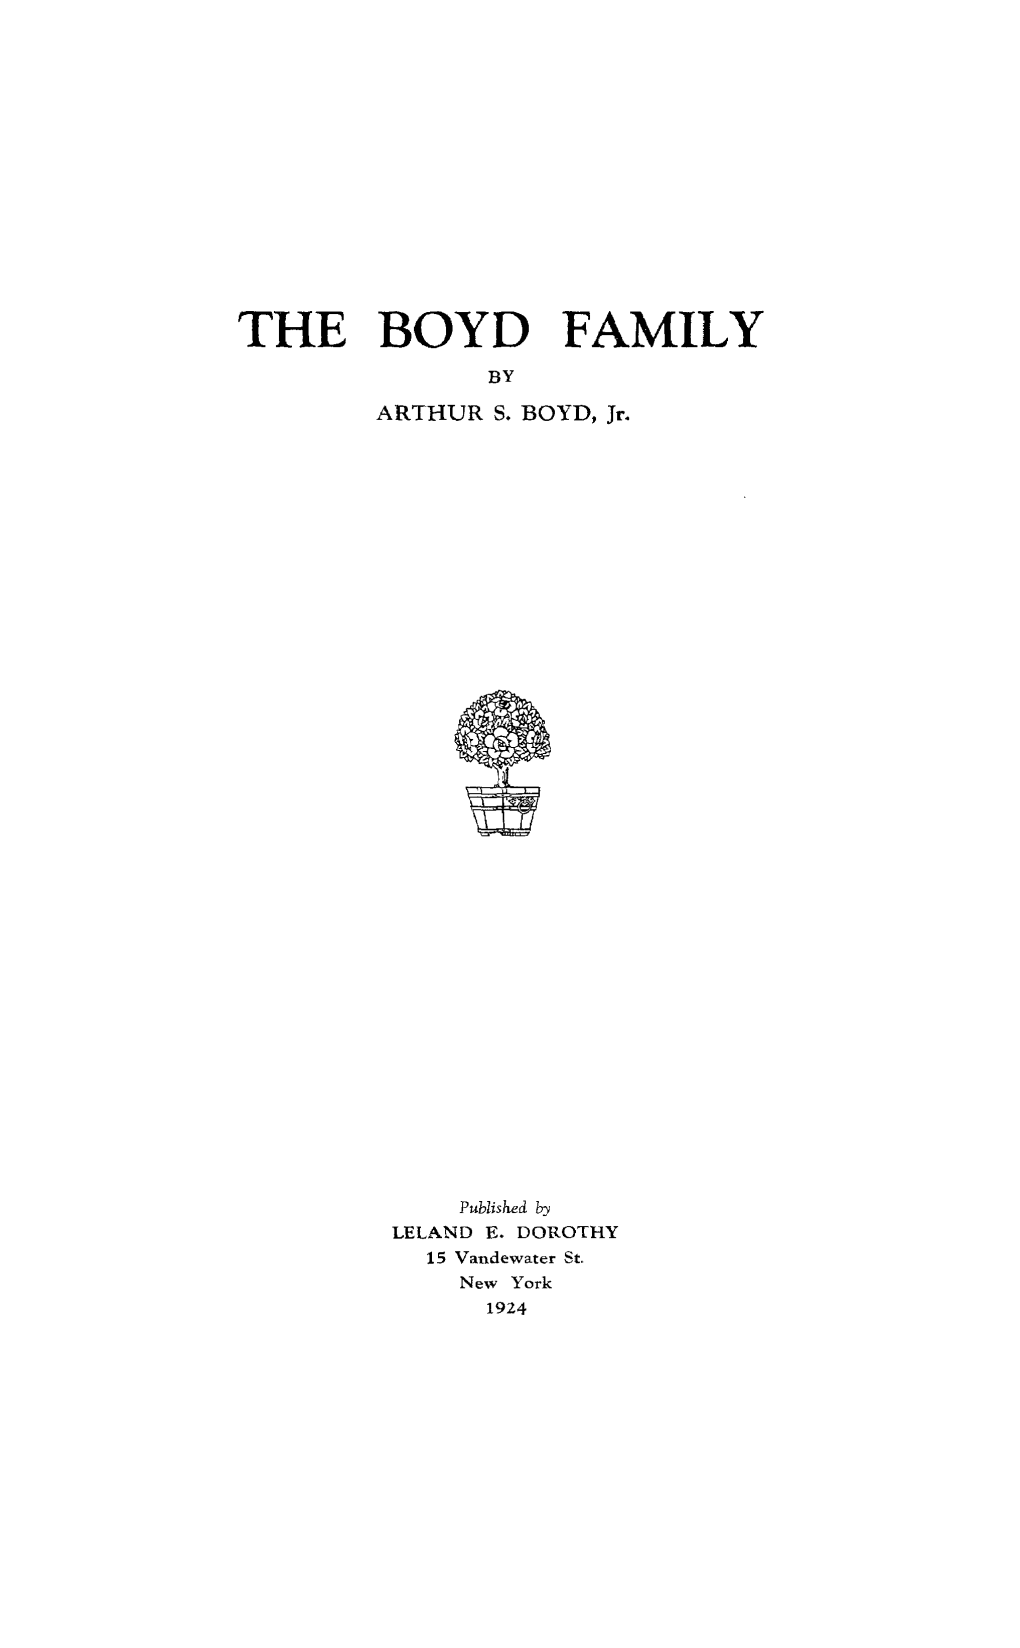 The Boyd Family by Arthurs